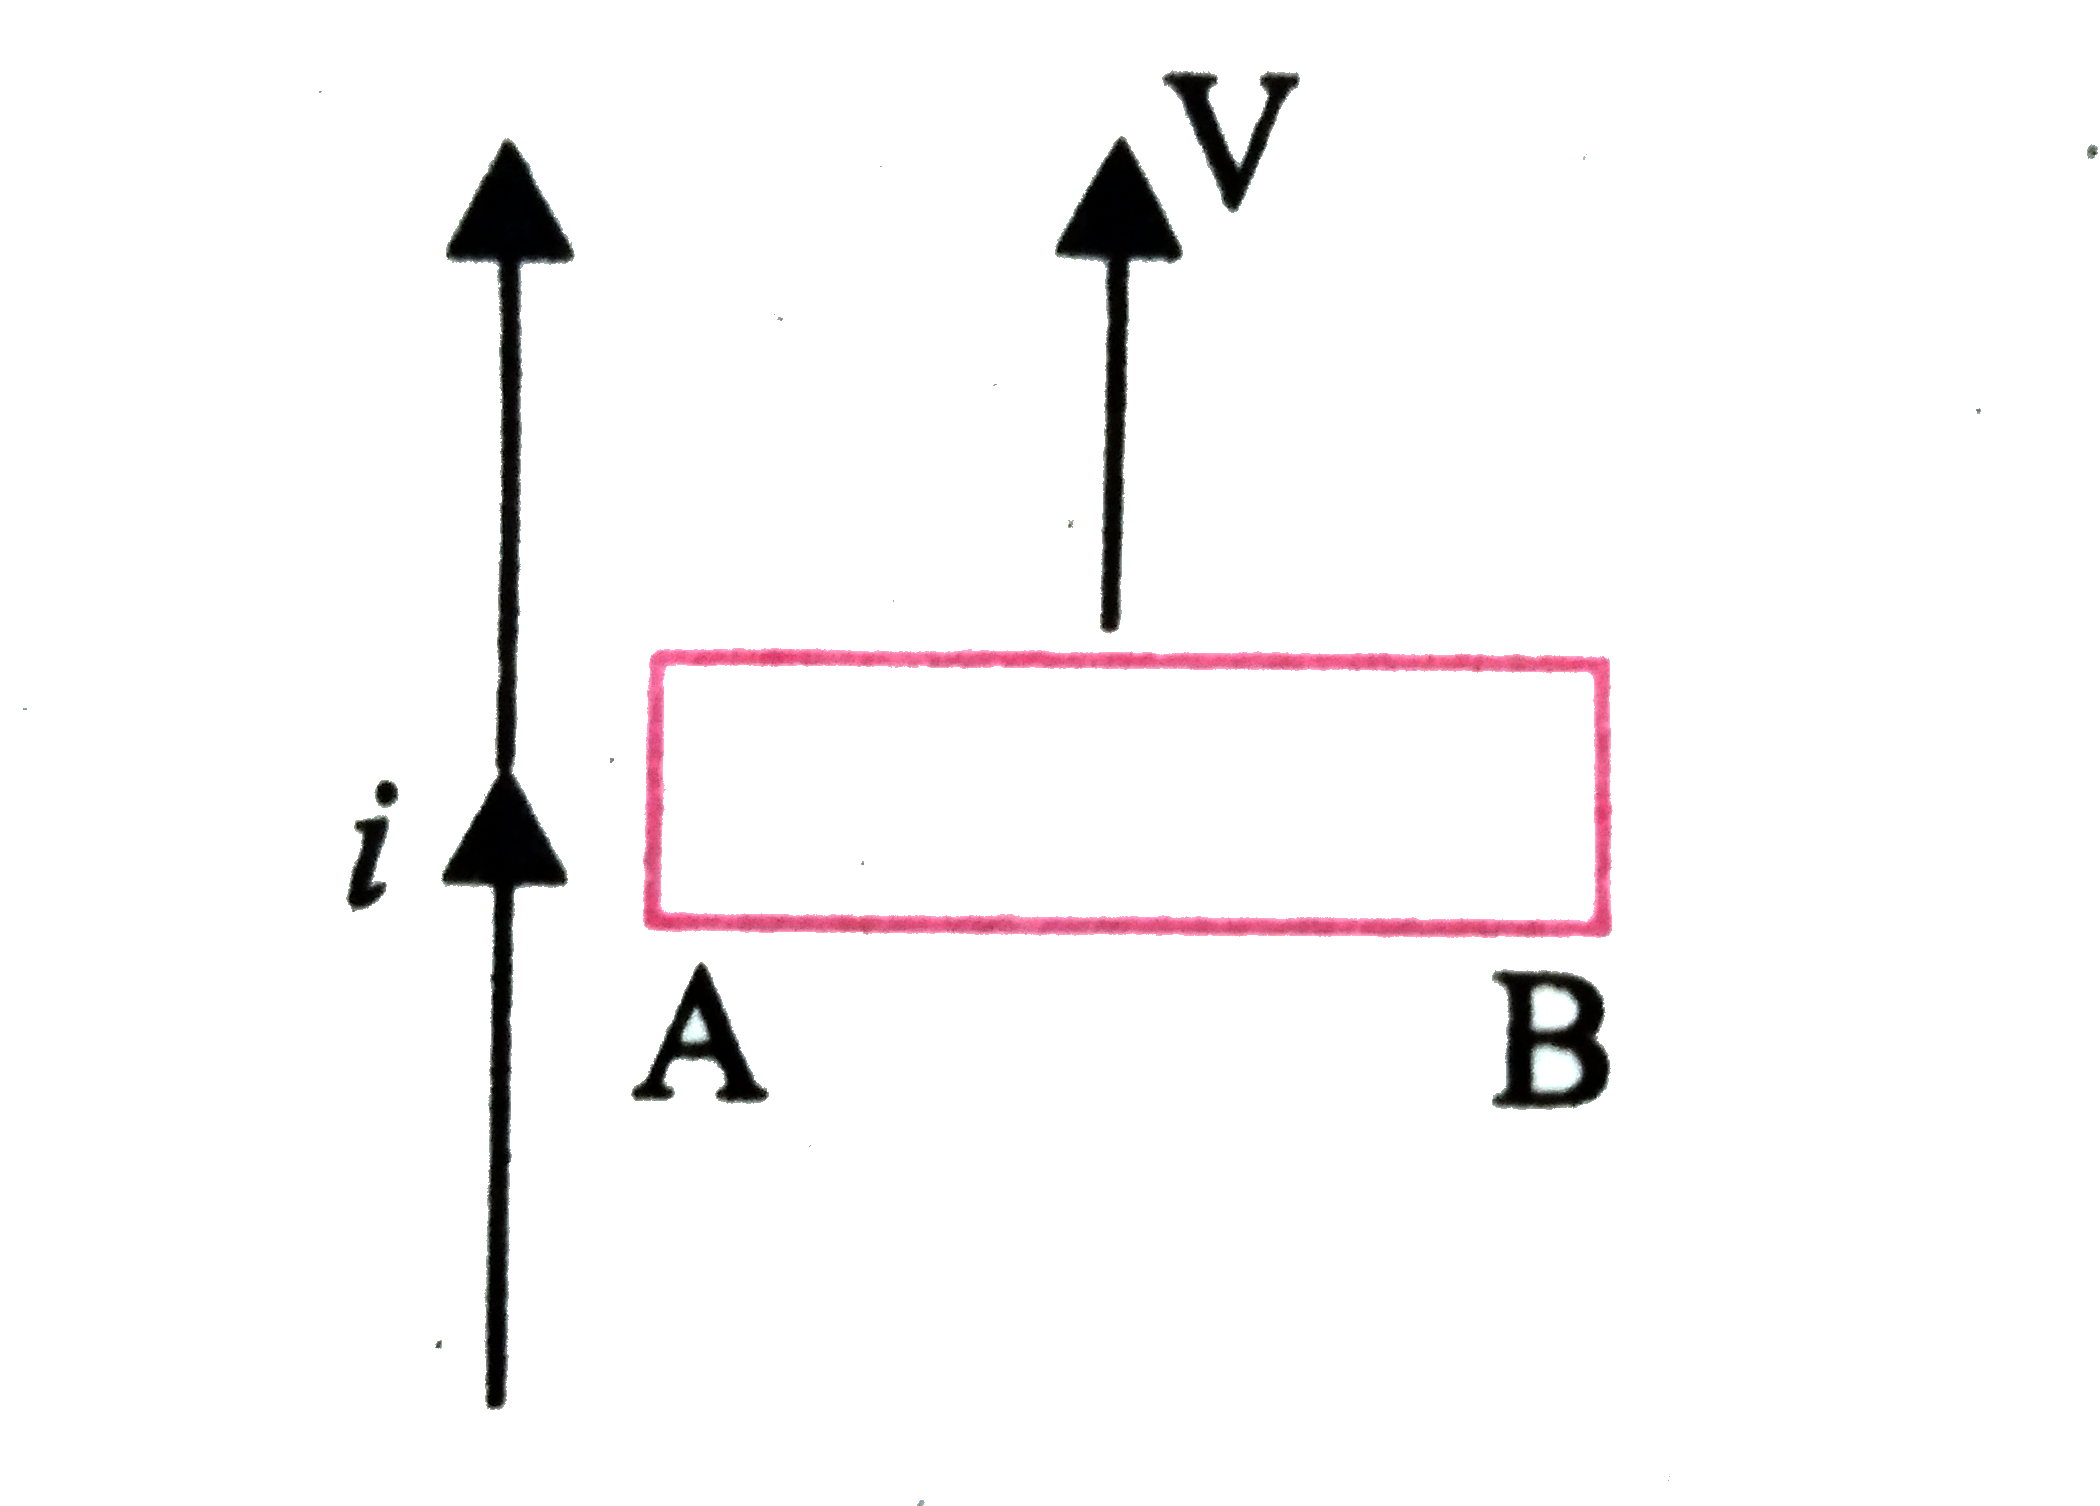 संलग्न चित्र में तार AB   में प्रेरित  धारा की दिशा  क्या होगी ?